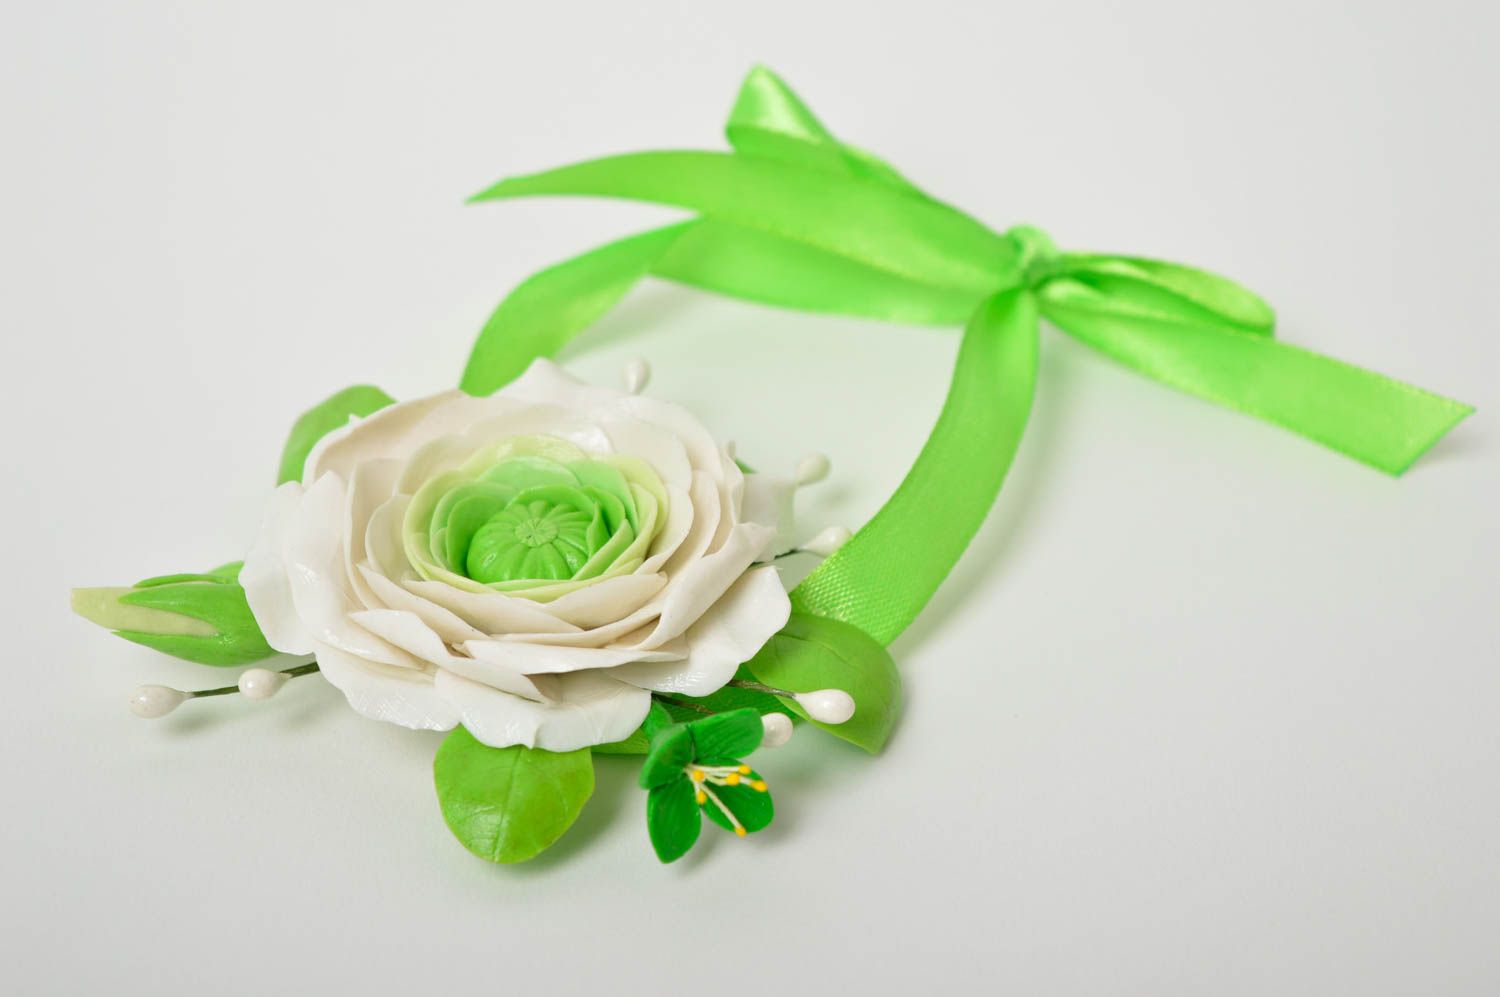 Handmade wedding flower accessories wedding boutonniere wedding decor photo 2